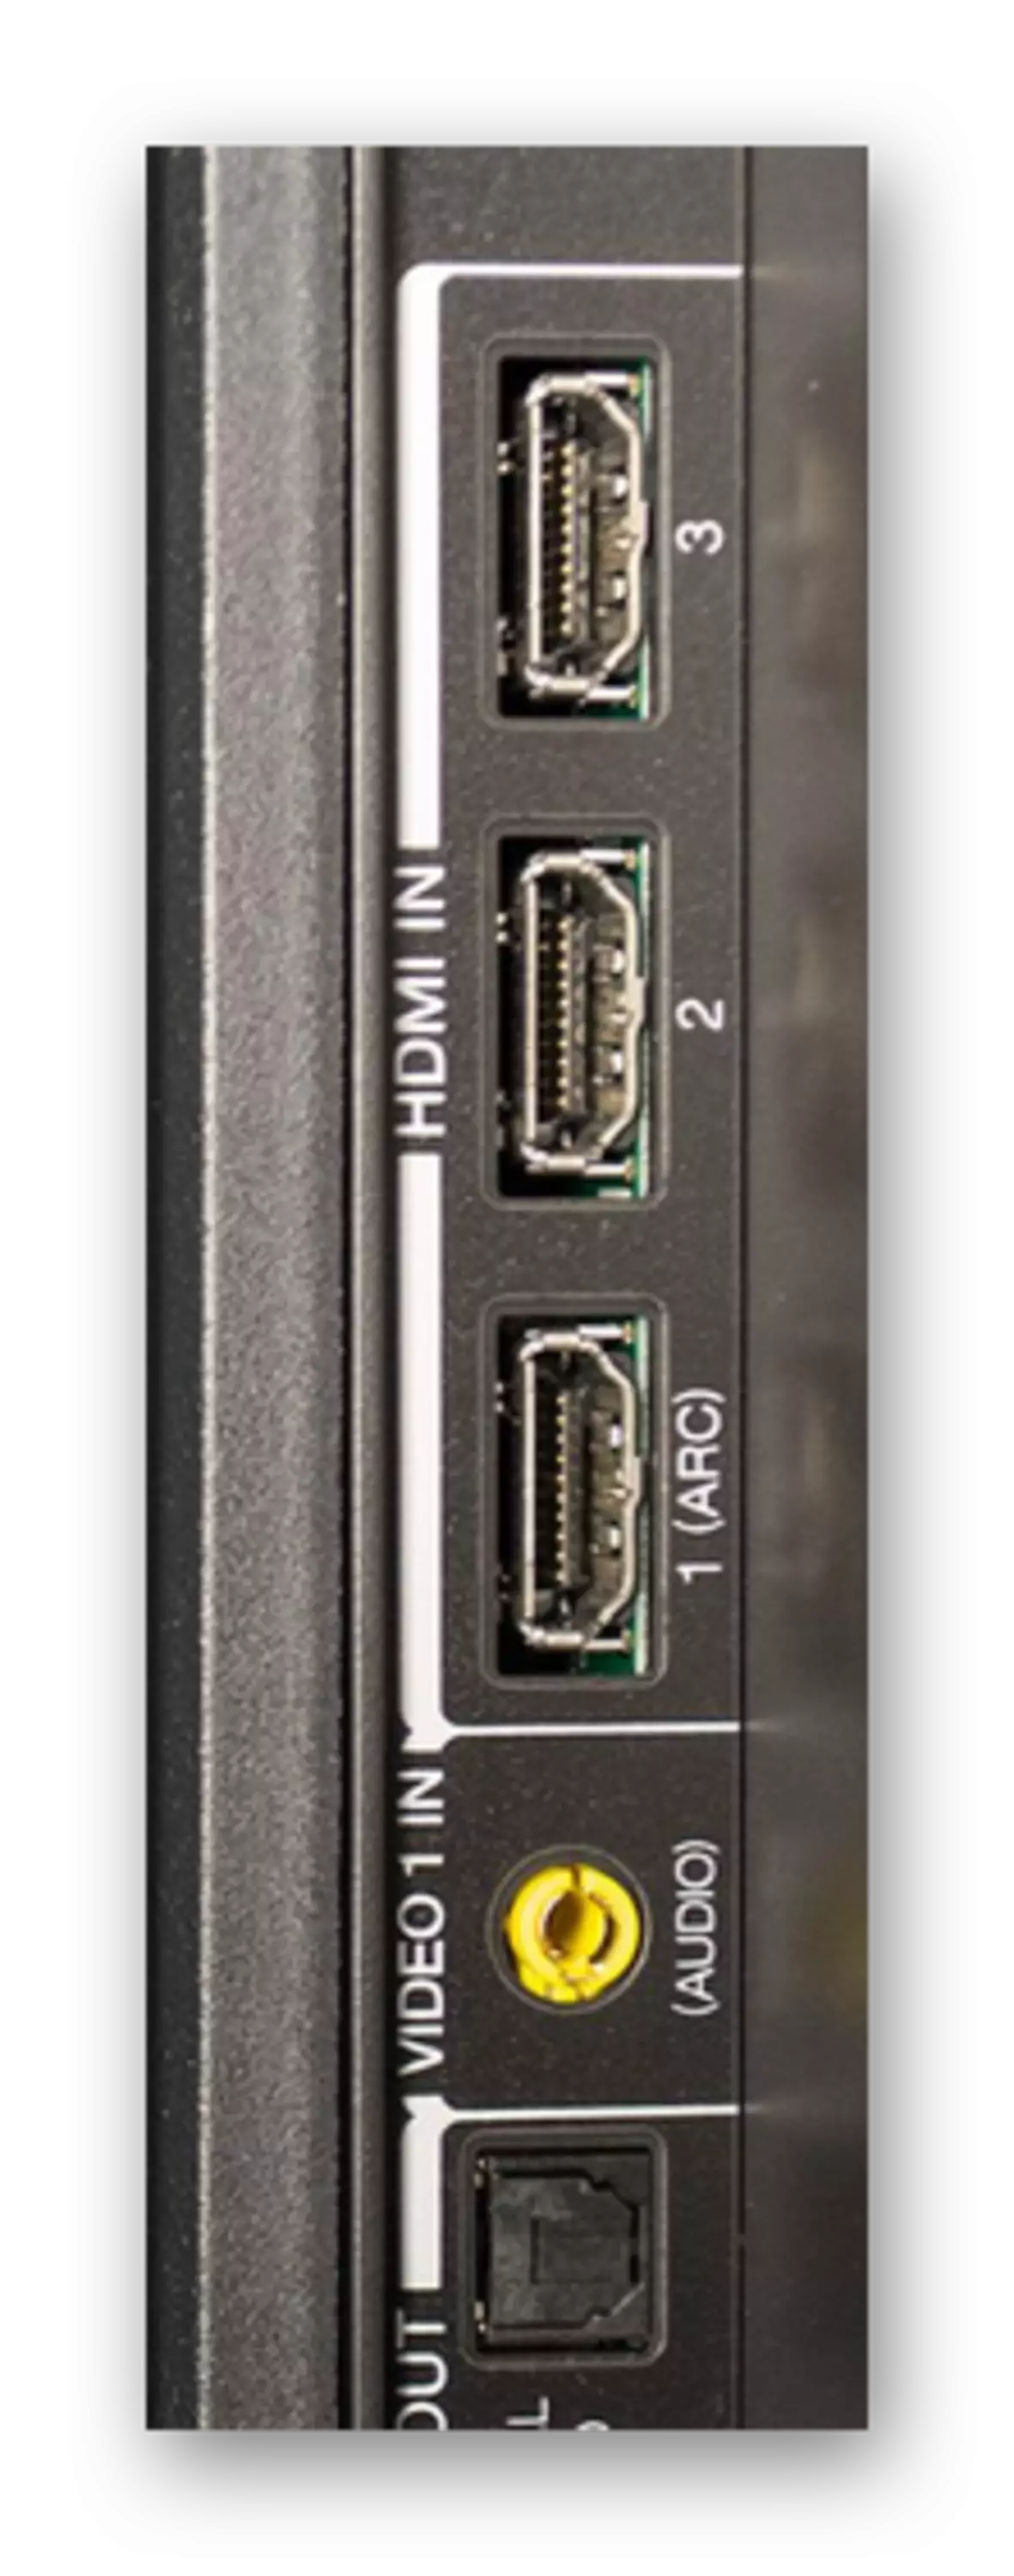 Exemplu de conectori HDMI la televizor